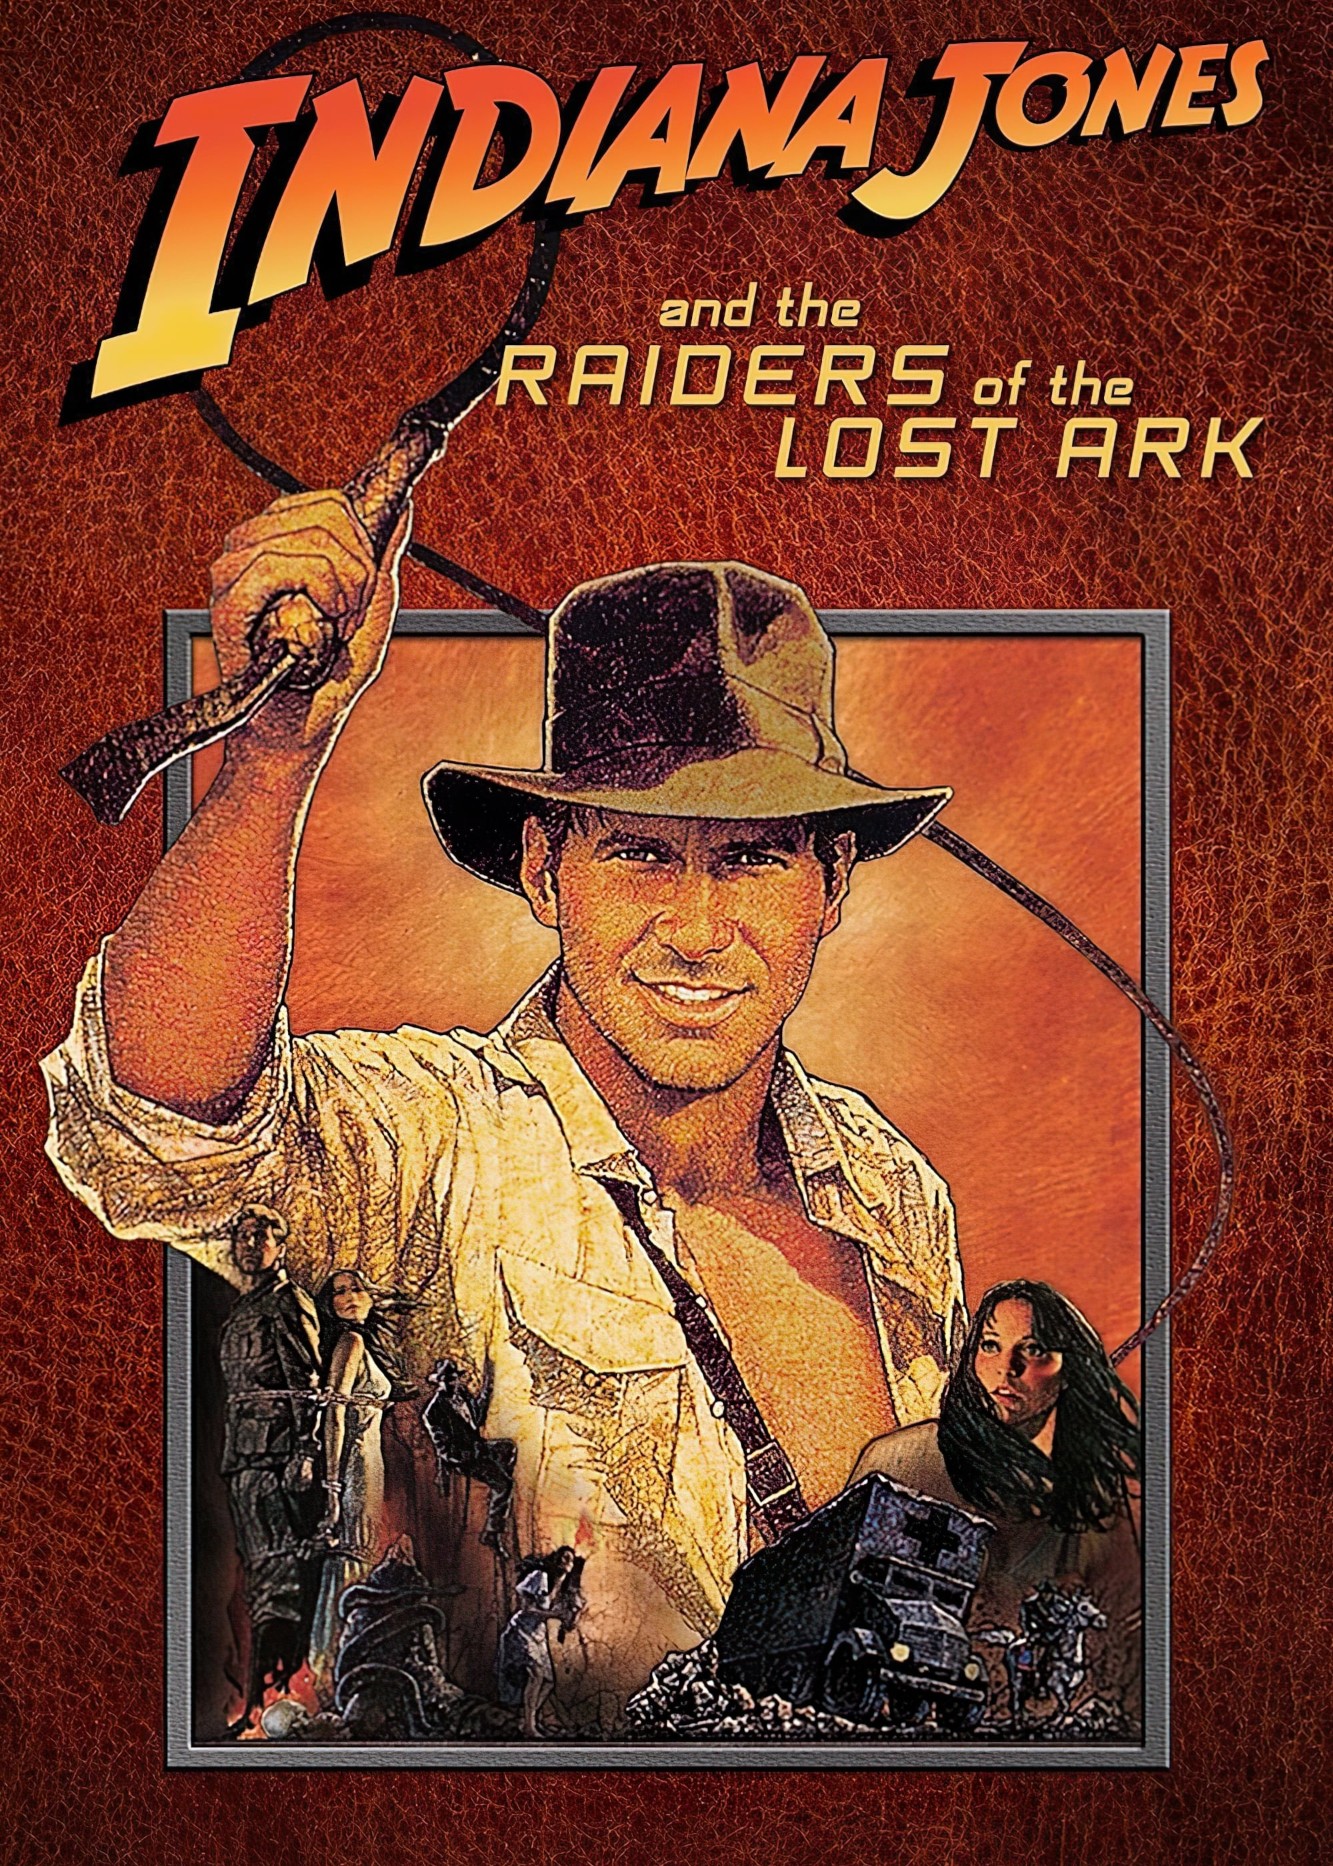 Indiana Jones Và Chiếc Rương Thánh Tích - Indiana Jones Và Chiếc Rương Thánh Tích (1981)